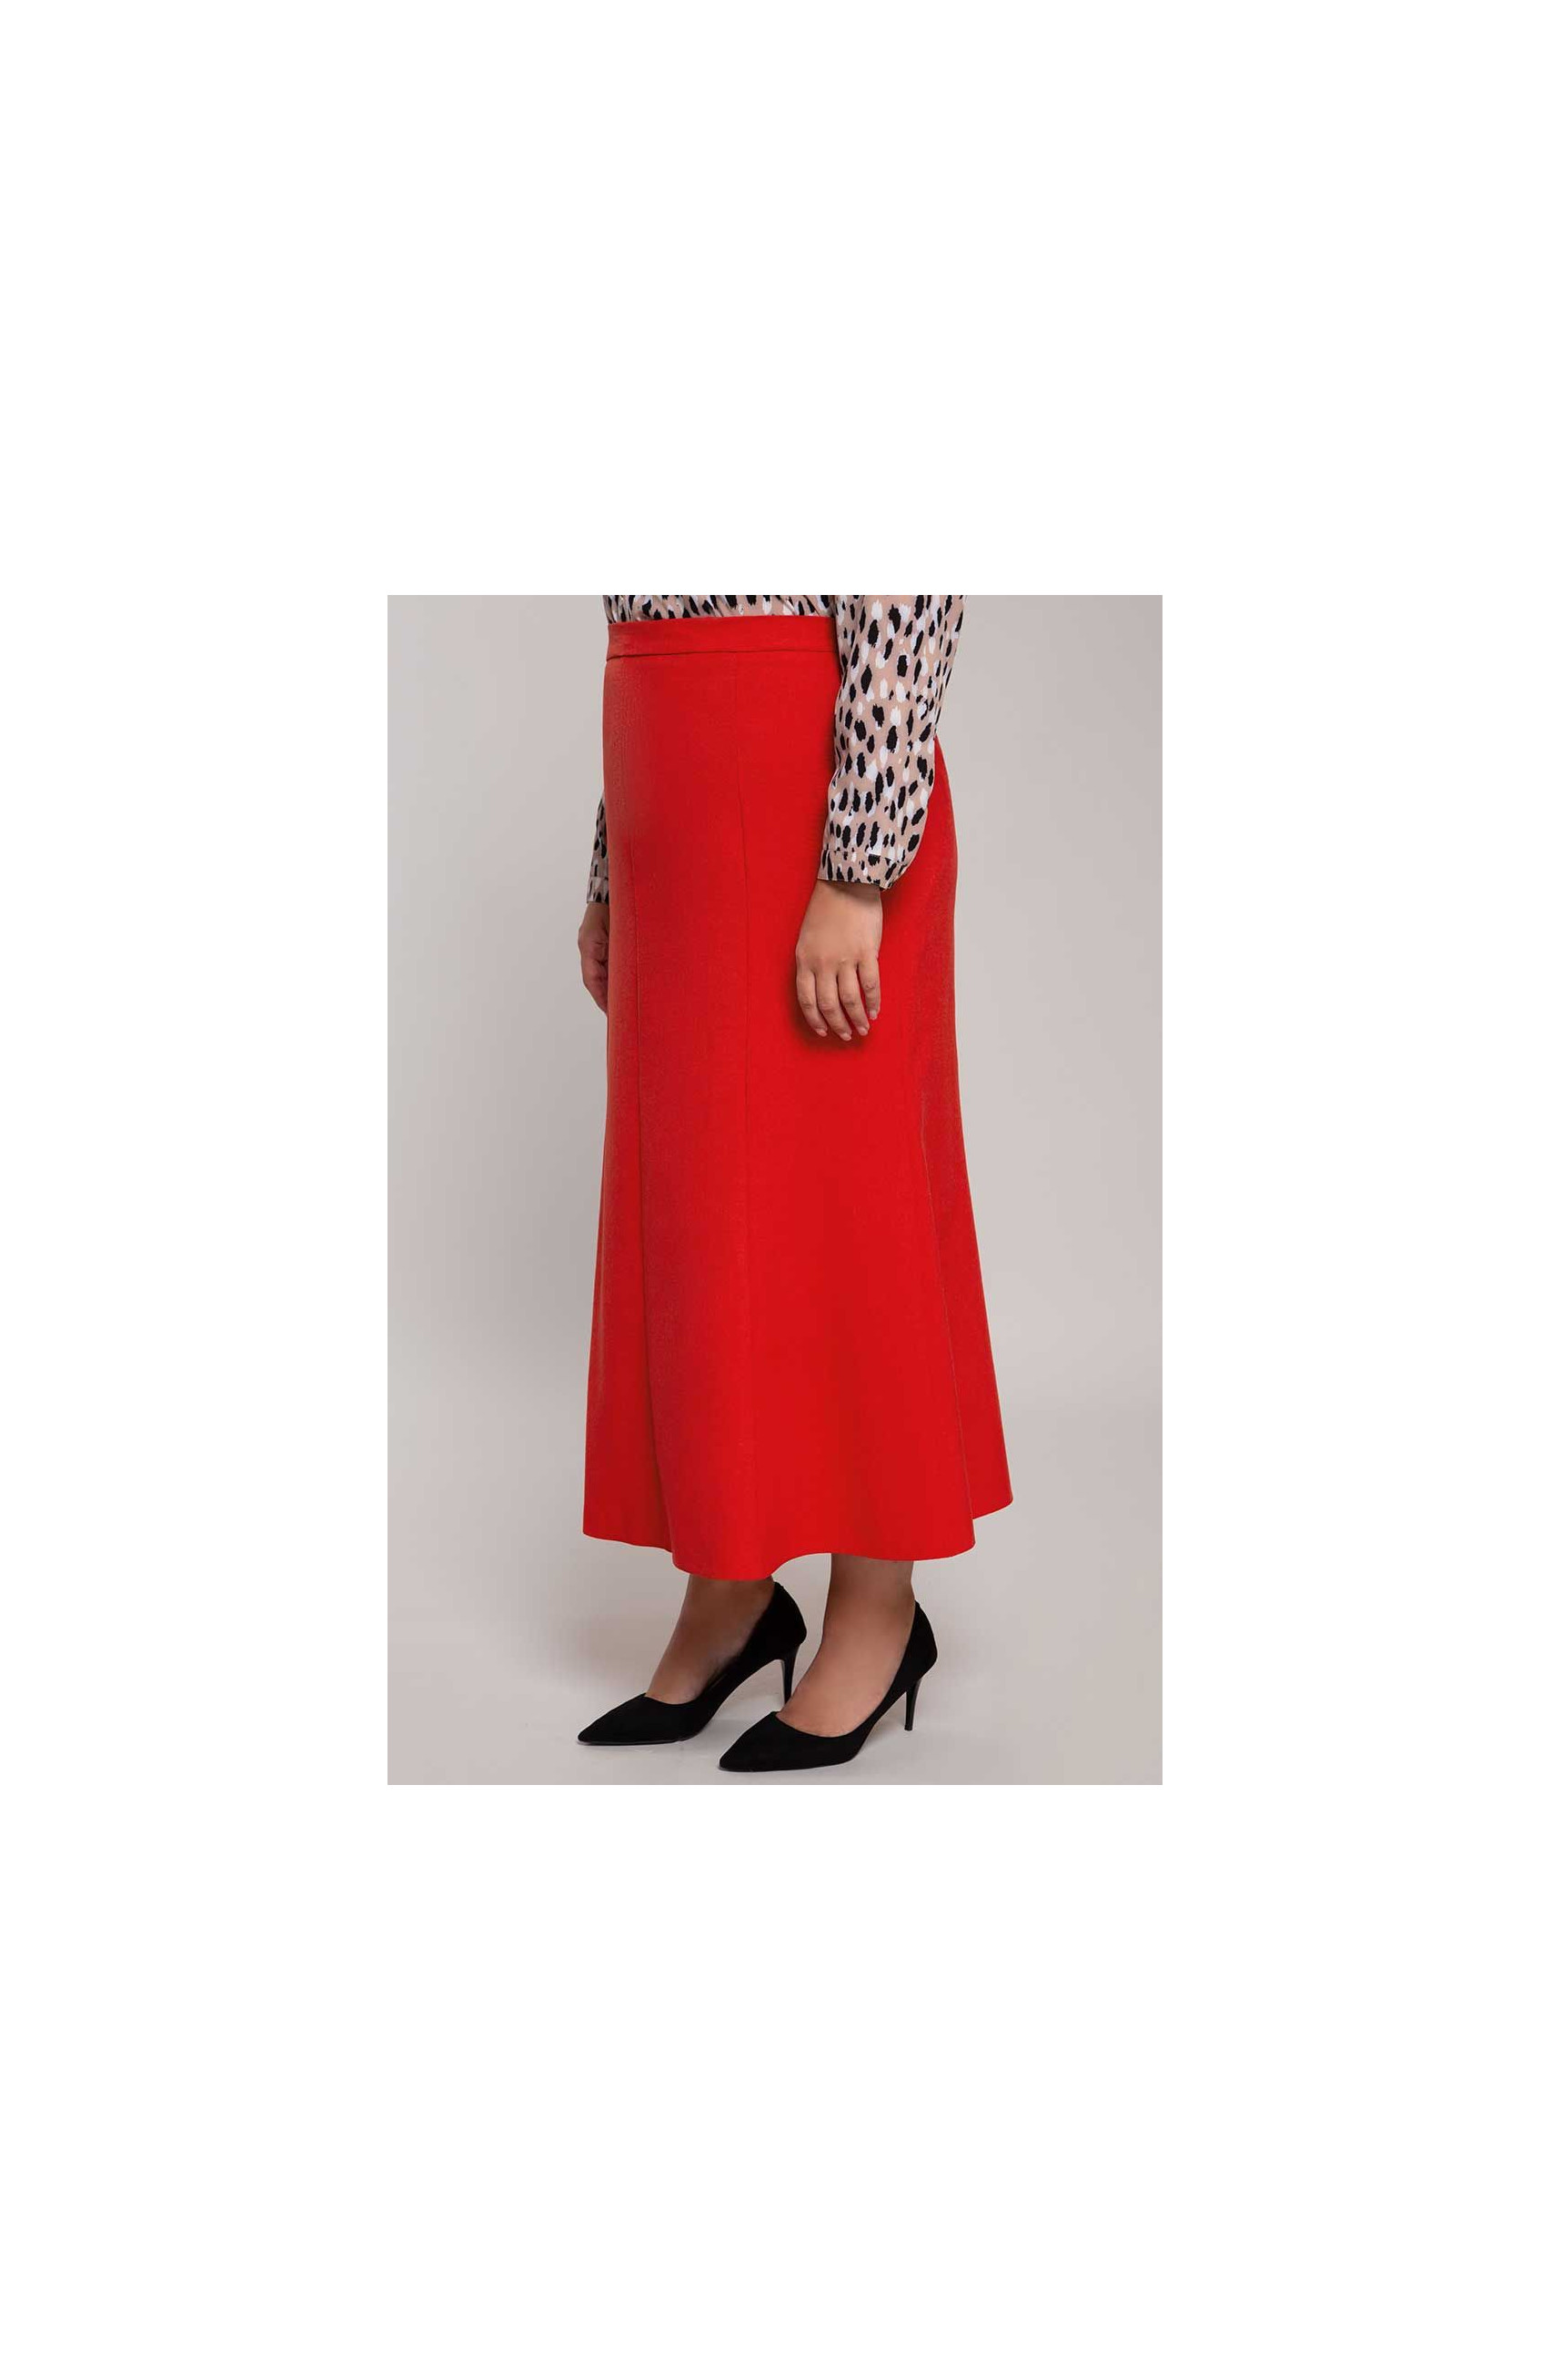 Raudonos spalvos lininis sijonas